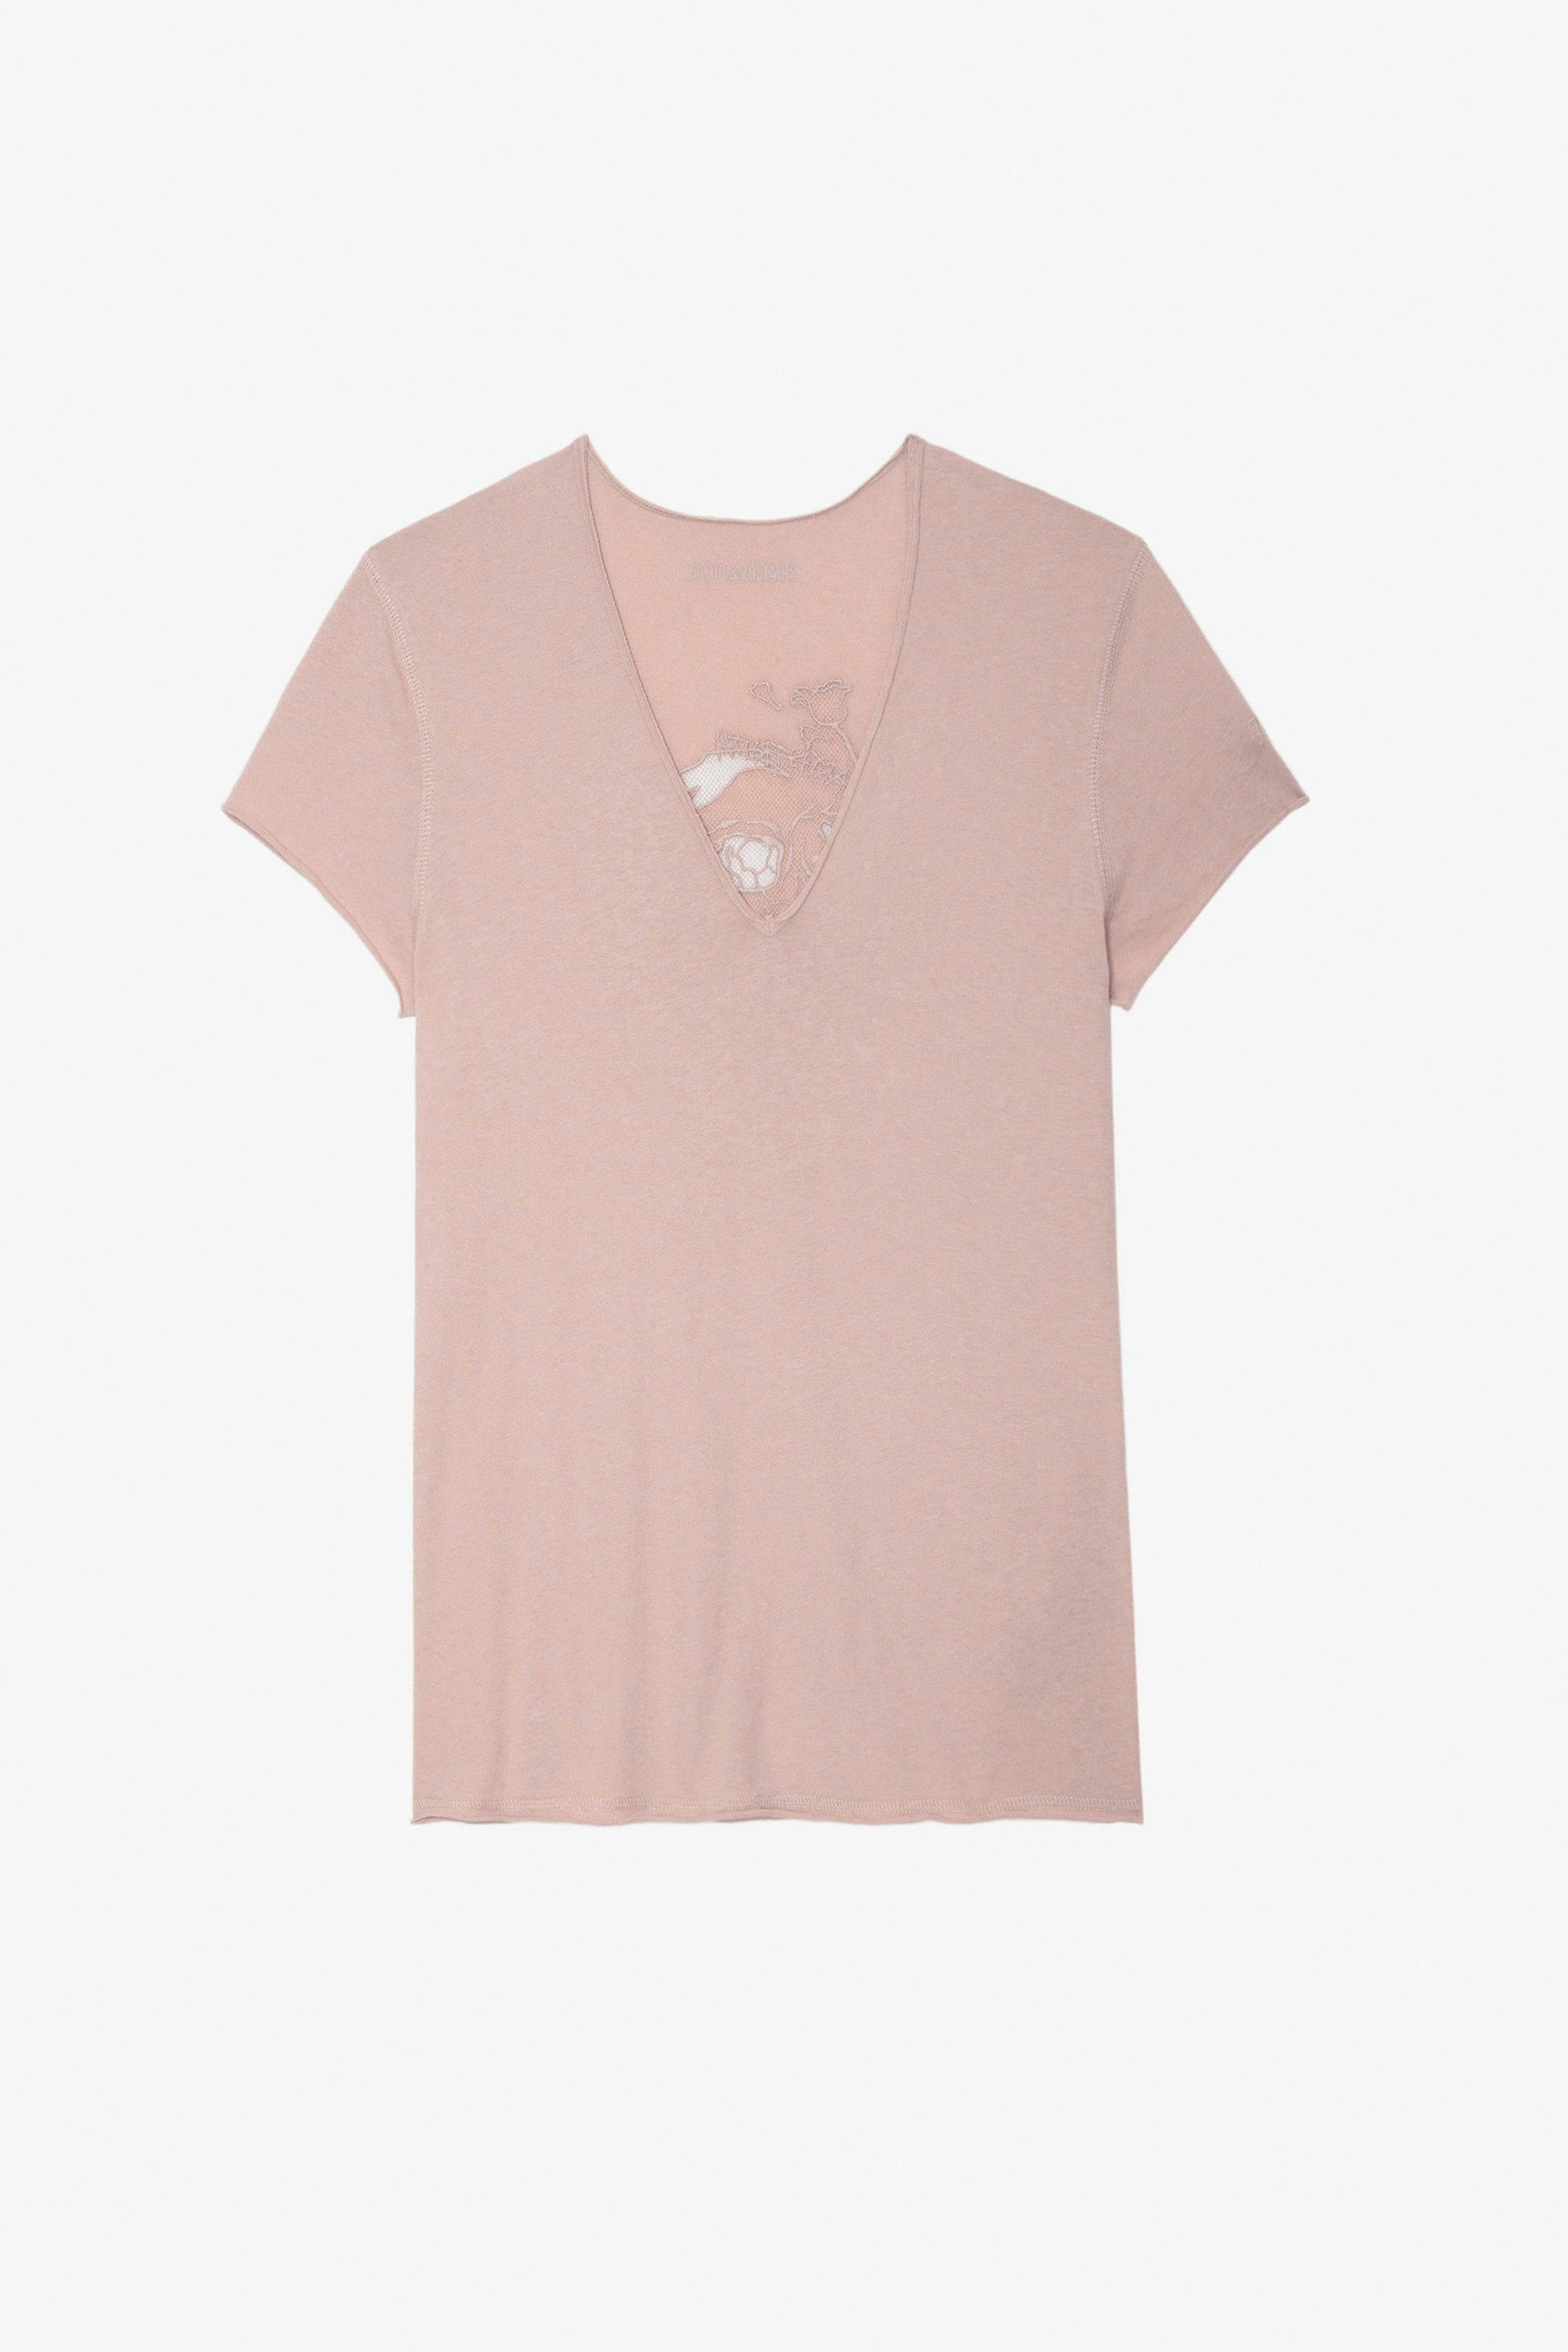 T-shirt Story Fishnet - T-shirt in cotone rosa da donna con ricamo teschio e fiori sul retro.